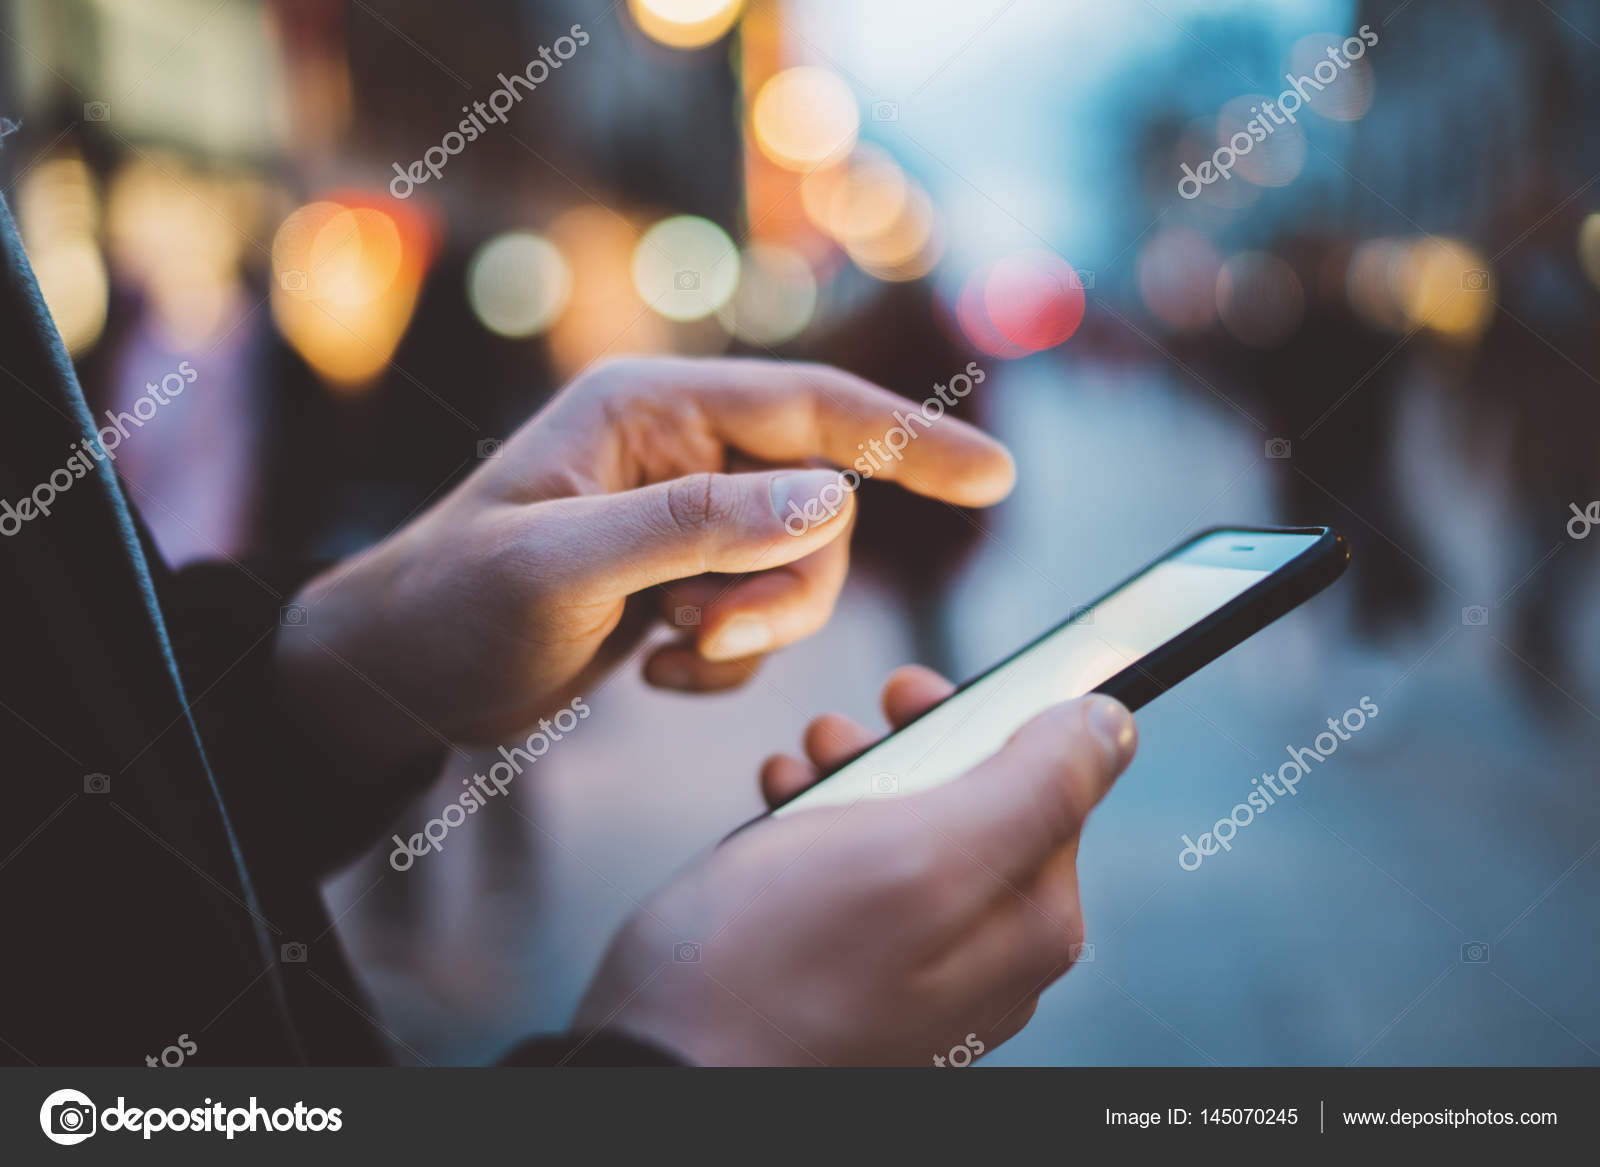 Фон руки с телефоном. Телефон в руке. Телефон ру. Мобильник в руке. Человек со смартфоном в руке.